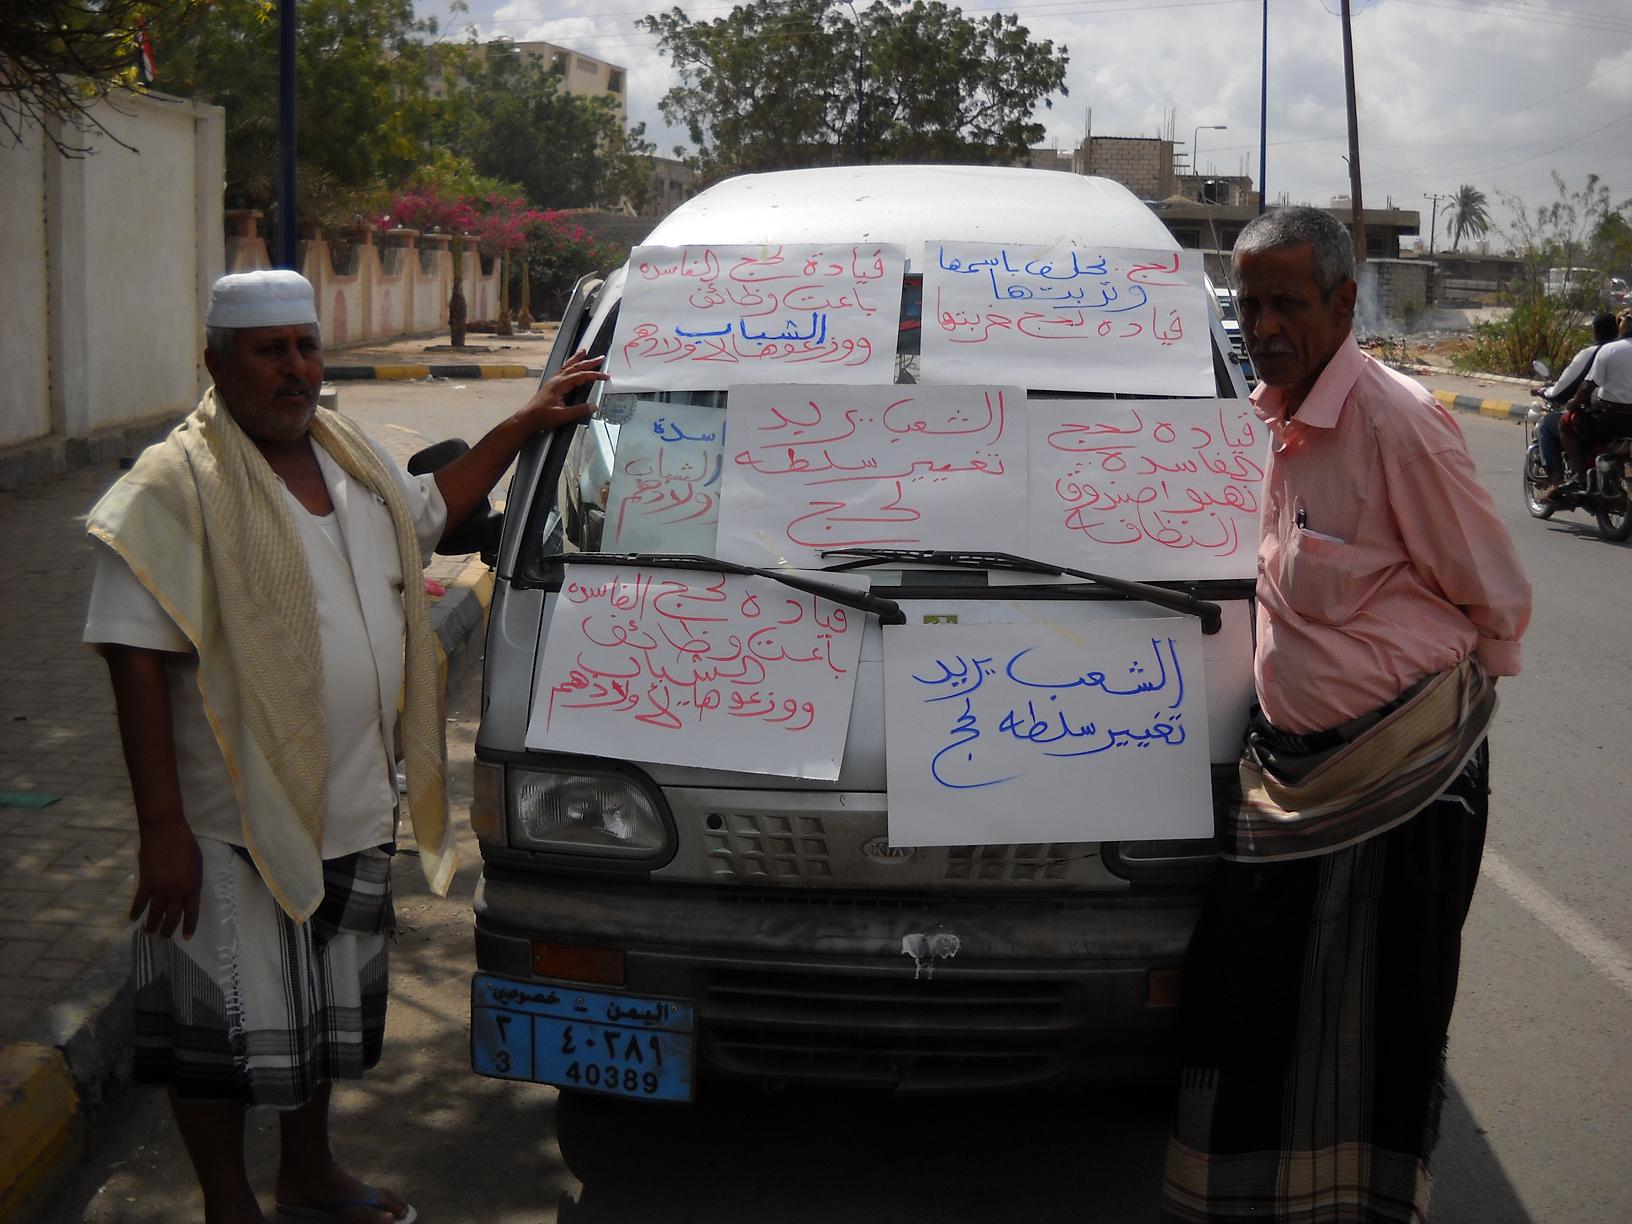   عضوان بمحلي لحج يعتصمان أمام ديوان المحافظة احتجاجاً على تصرفات السلطة المحلية